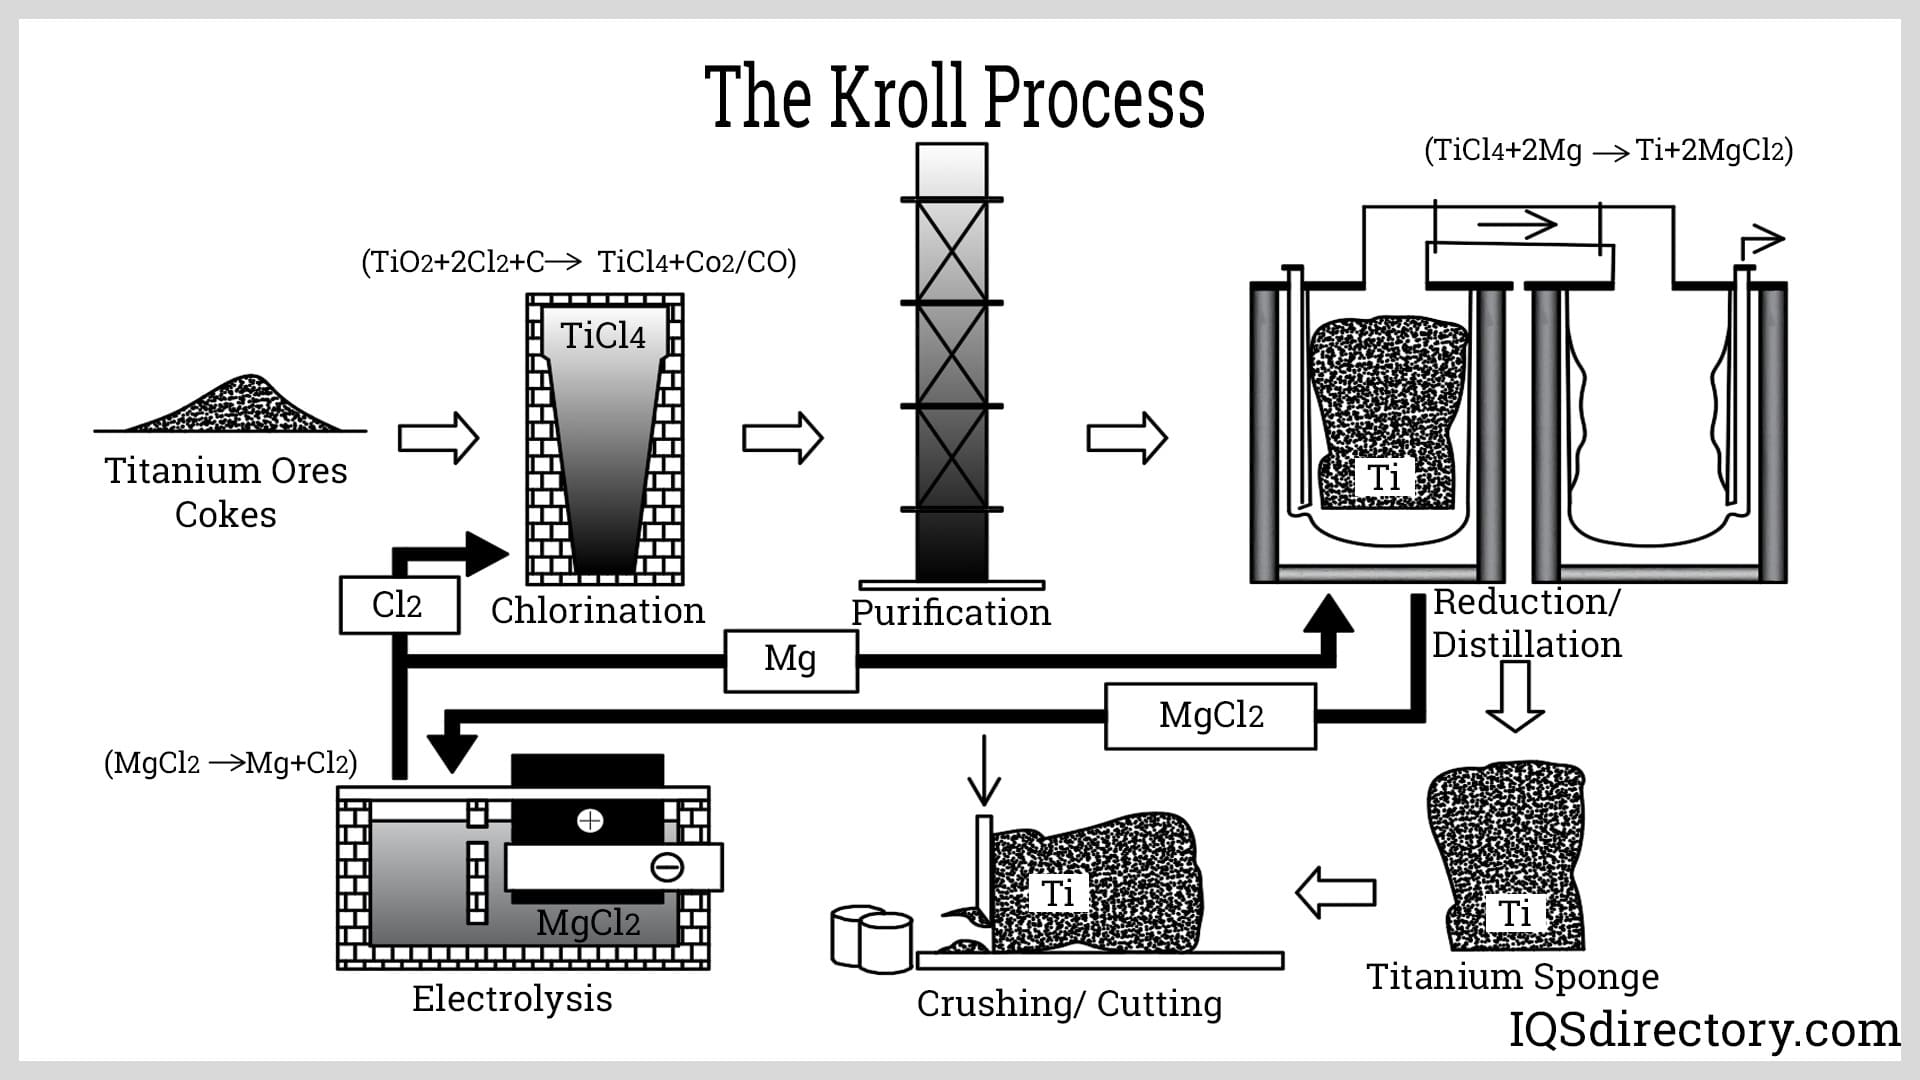 The Kroll Process